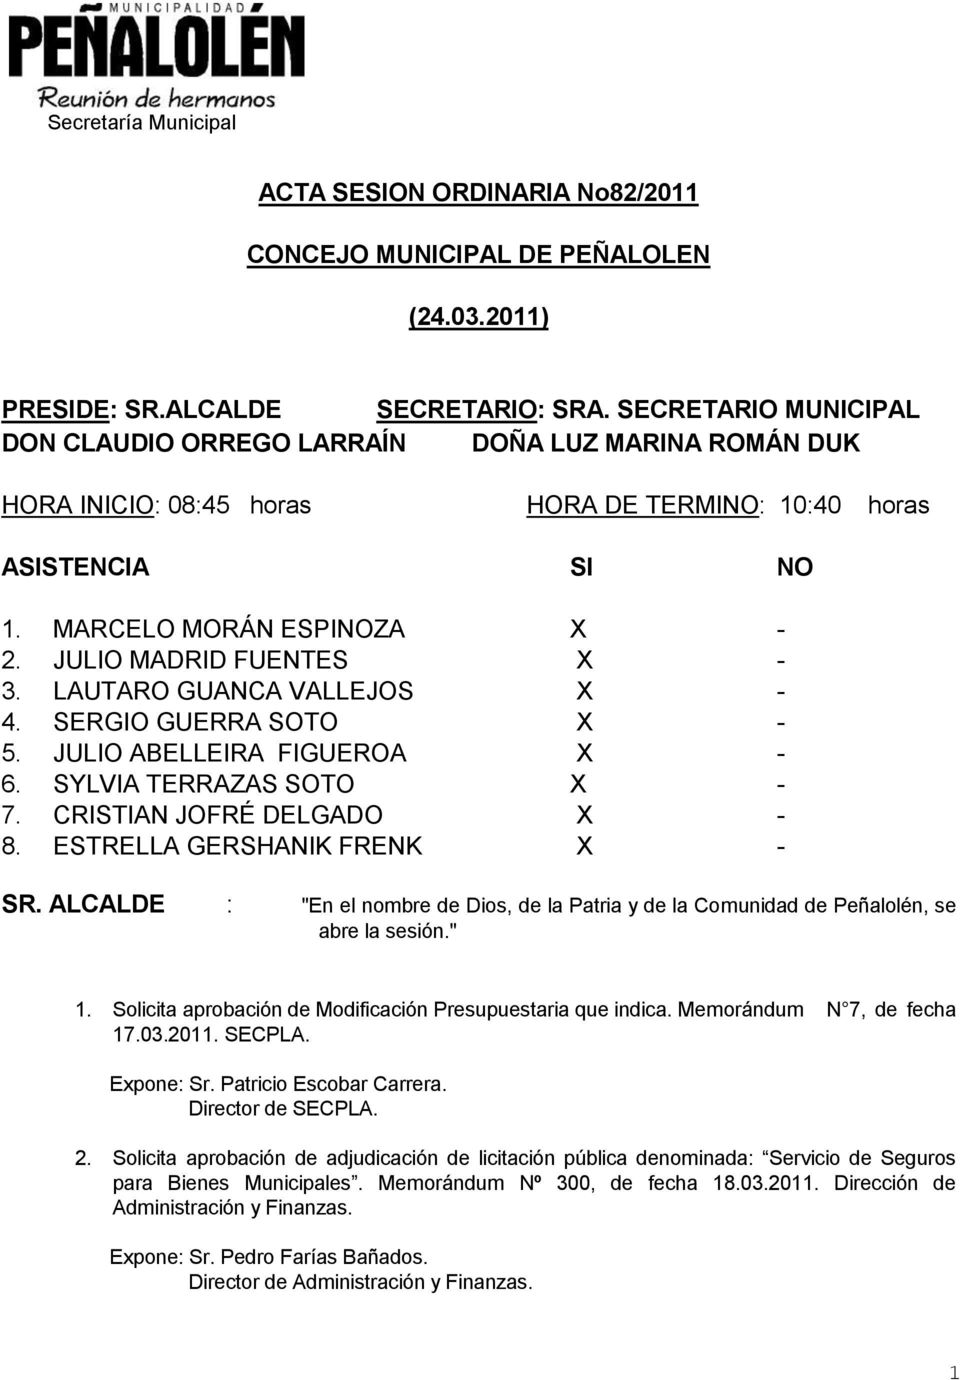 JULIO MADRID FUENTES X - 3. LAUTARO GUANCA VALLEJOS X -. SERGIO GUERRA SOTO X - 5. JULIO ABELLEIRA FIGUEROA X - 6. SYLVIA TERRAZAS SOTO X - 7. CRISTIAN JOFRÉ DELGADO X - 8.